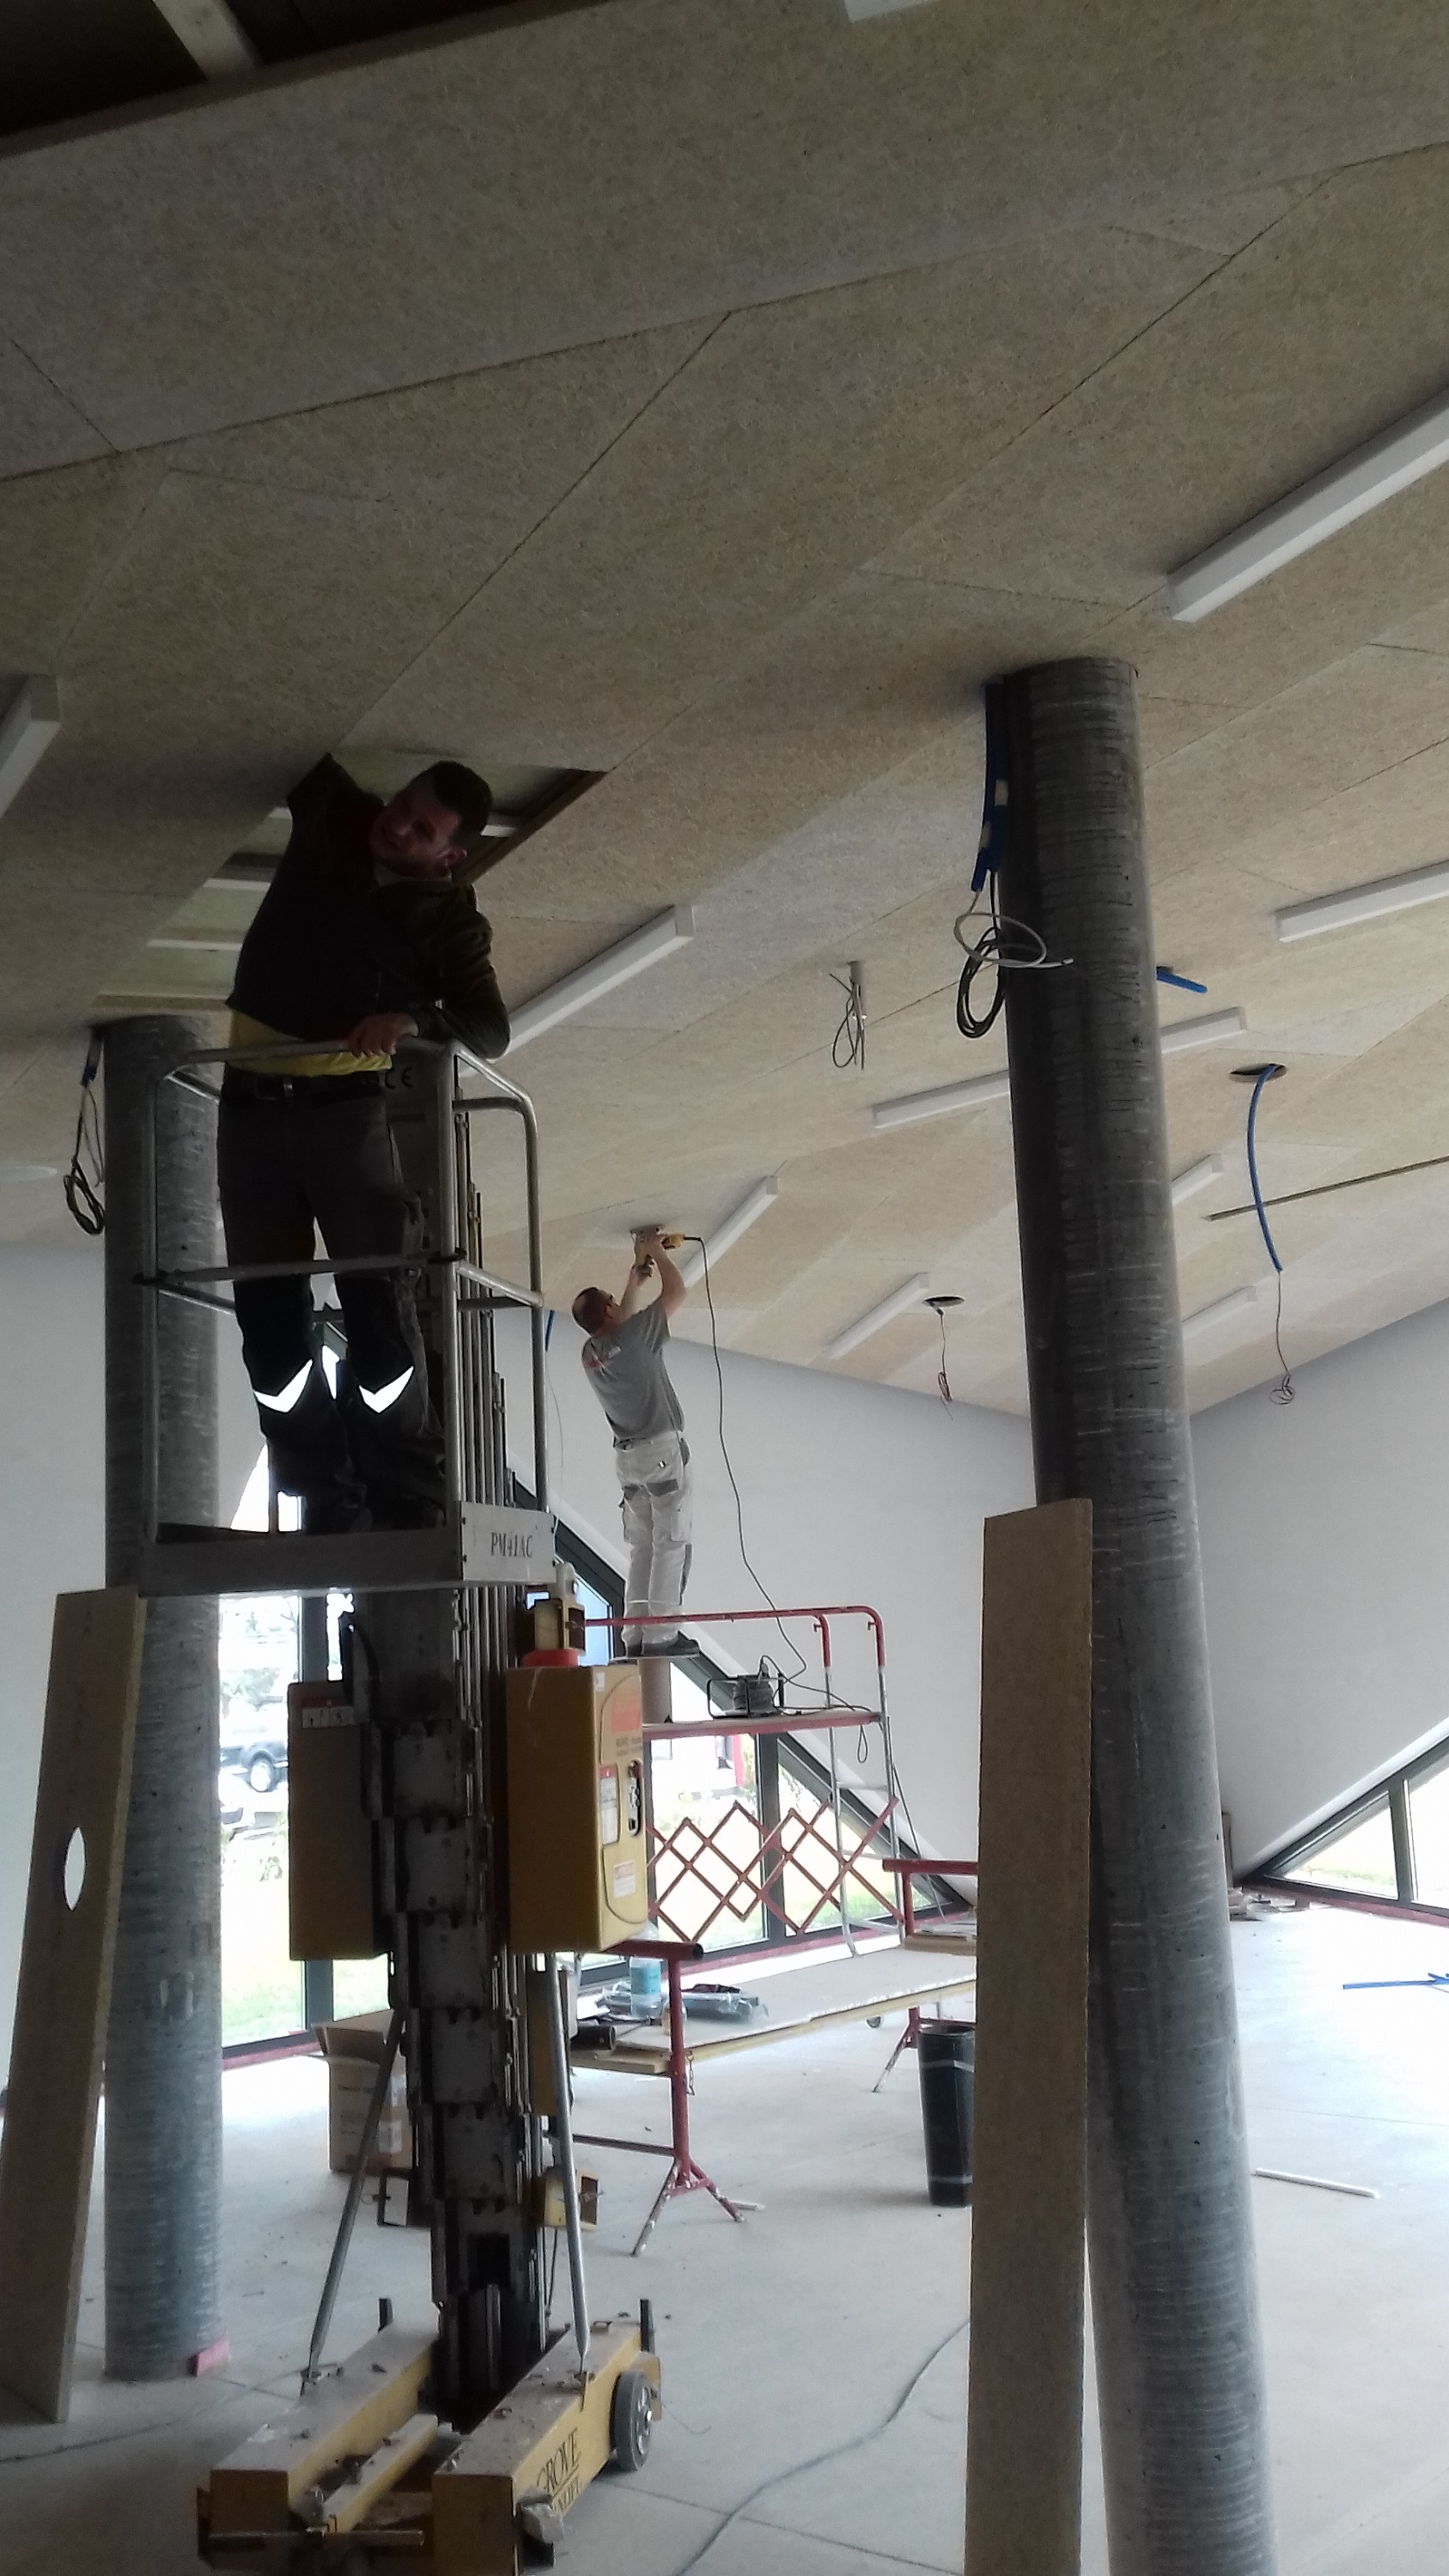 Installazione altoparlanti JBL a soffitto